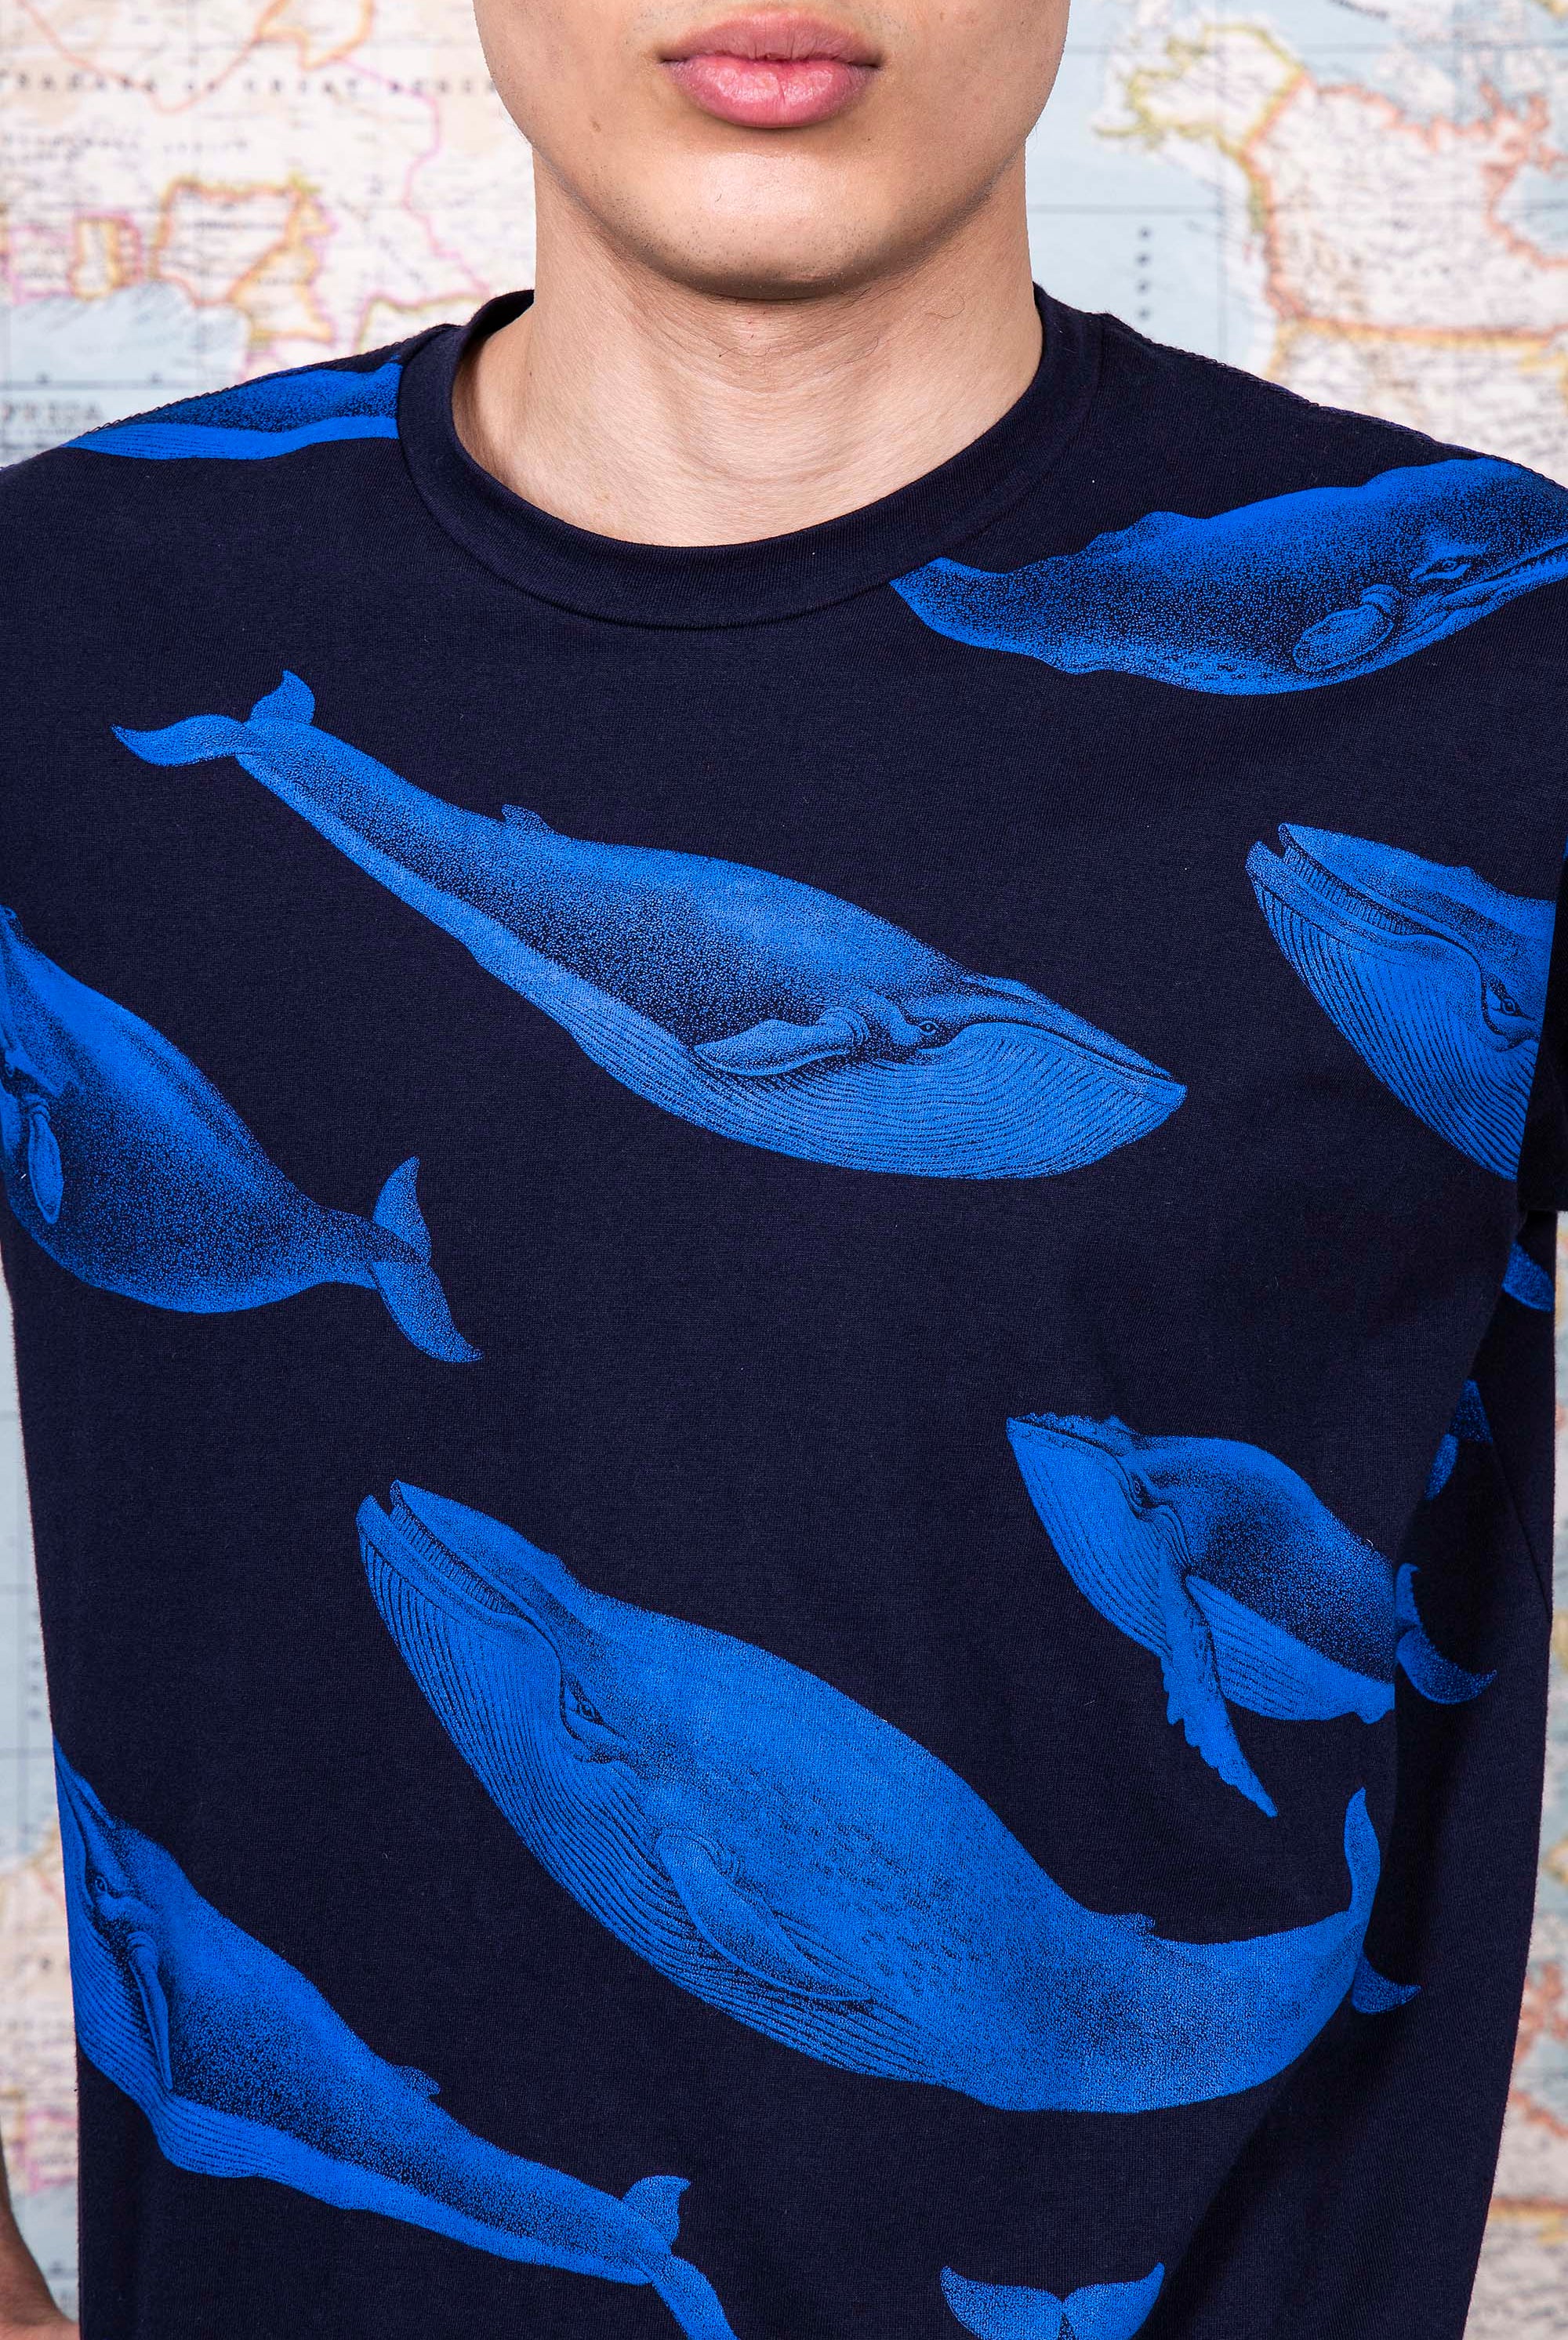 T-Shirt Mario Ballena Bleu marine t-shirts pour homme simples, polyvalents pour toutes les occasions